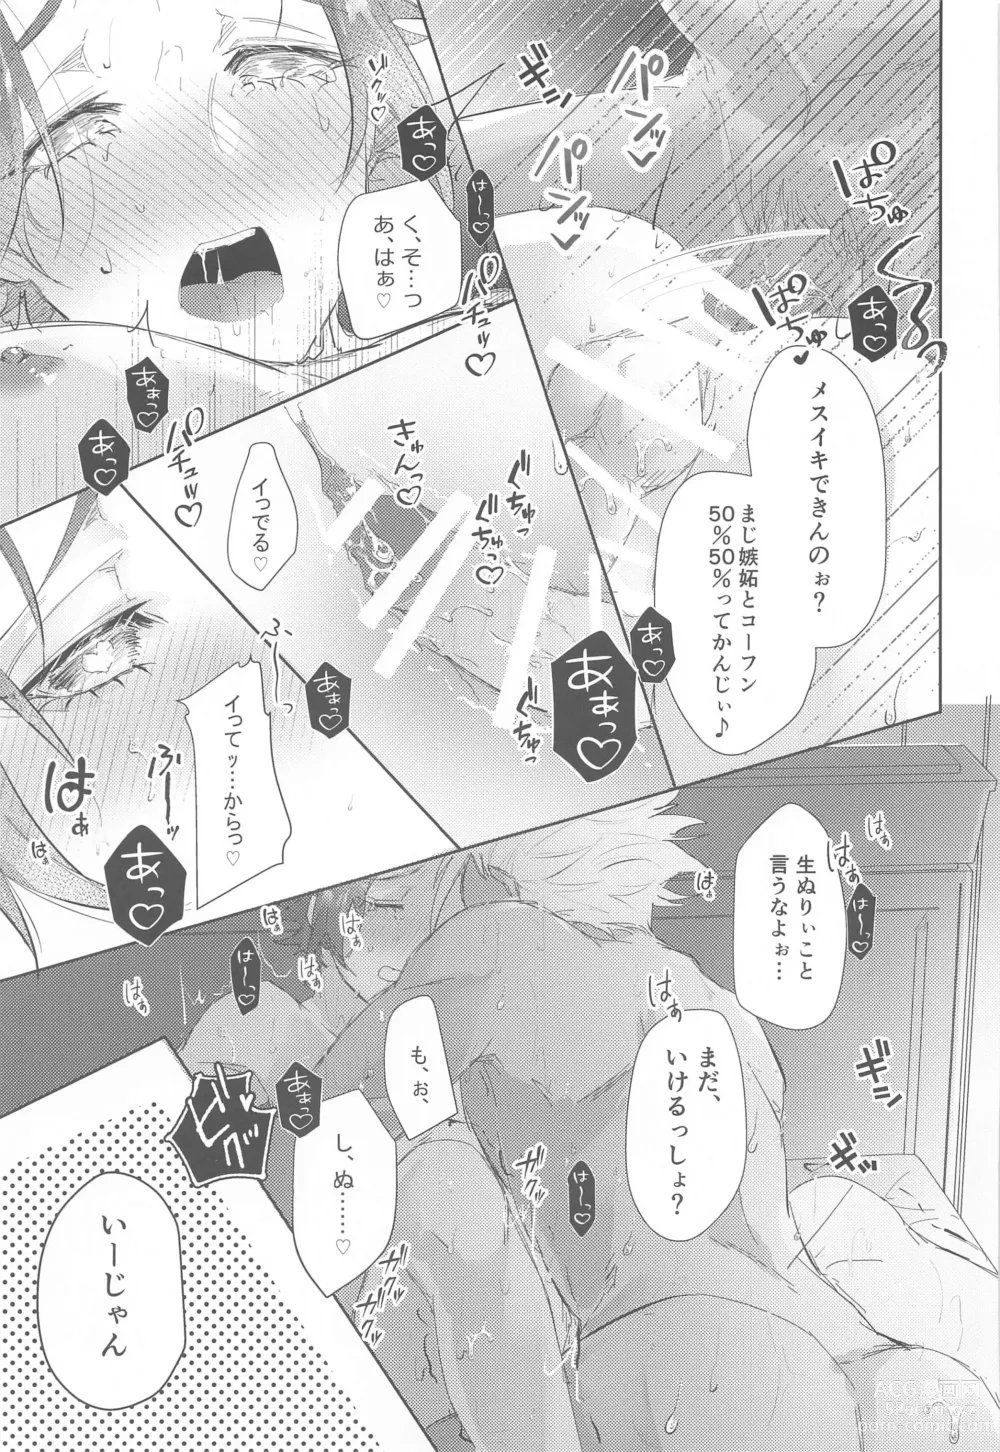 Page 34 of doujinshi Gogo 9-Ji no Sweet Room